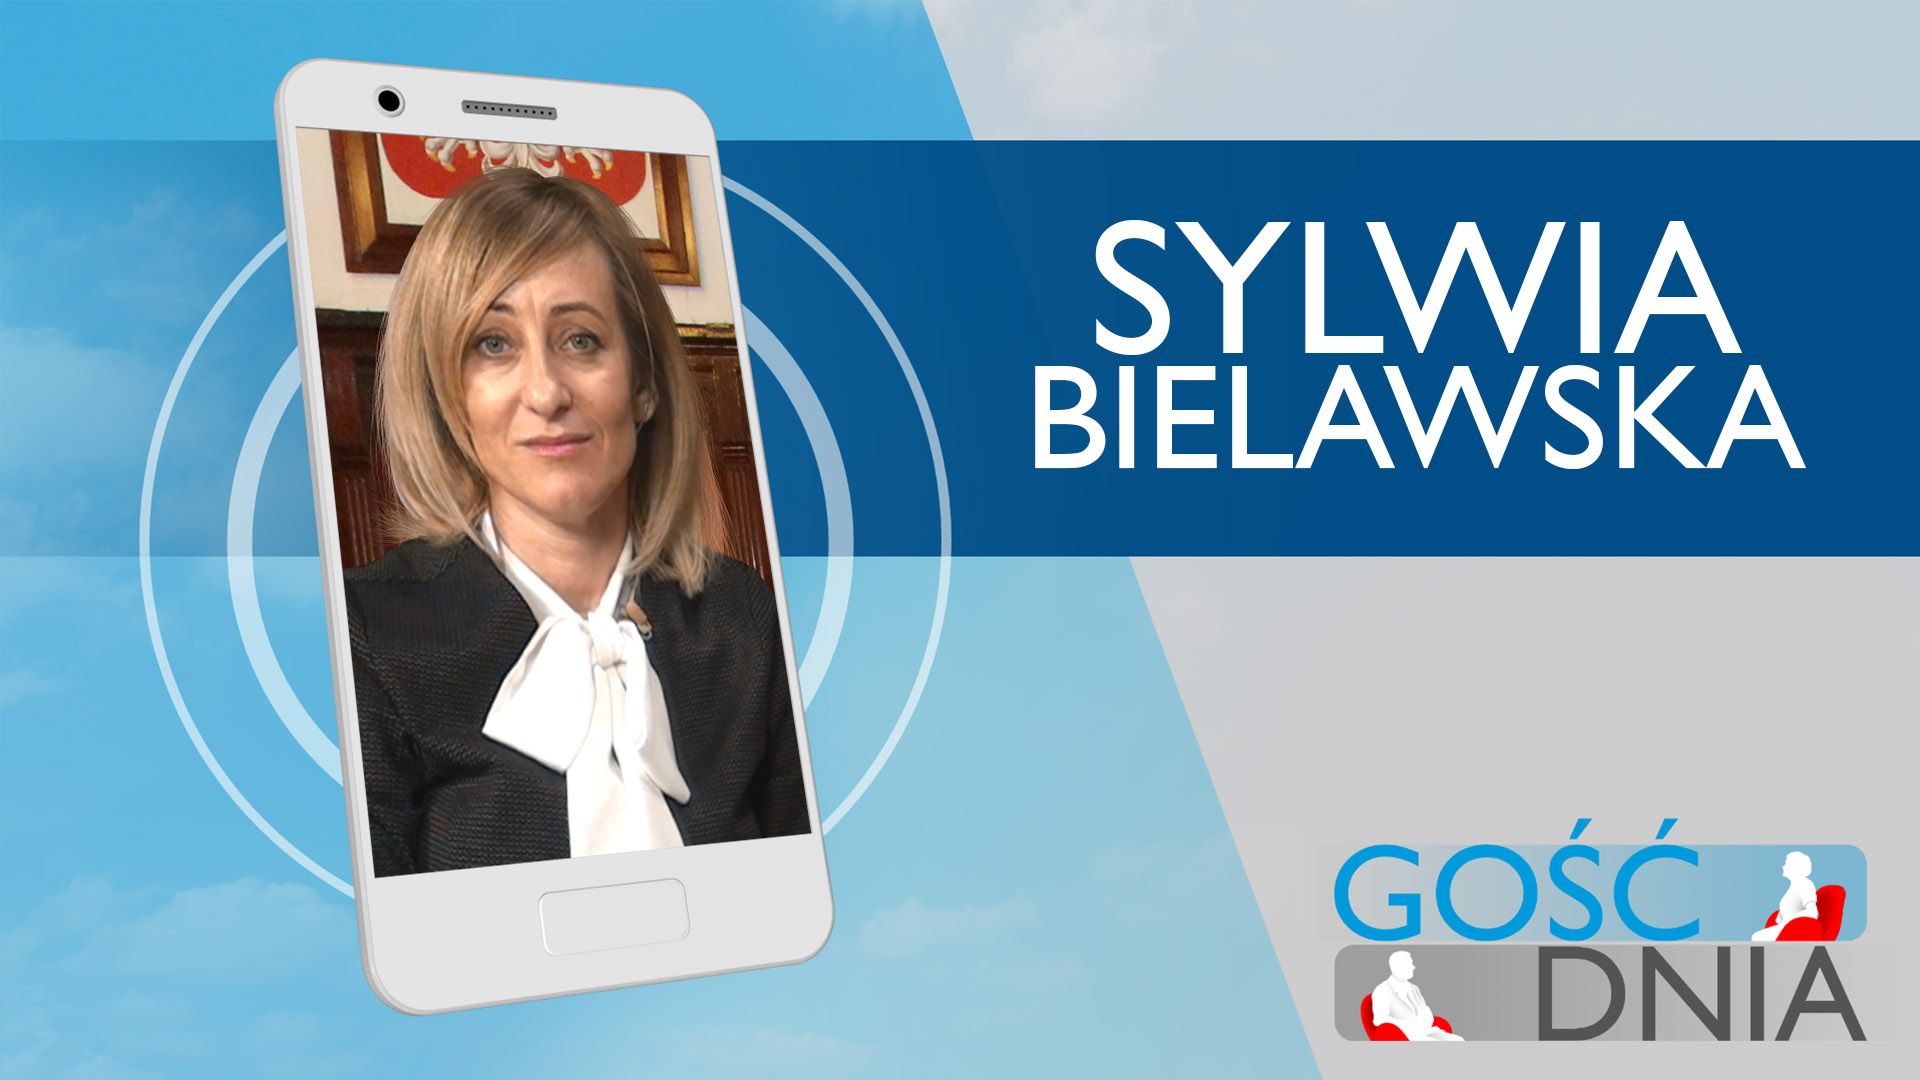 Gość Dnia - Sylwia Bielawska